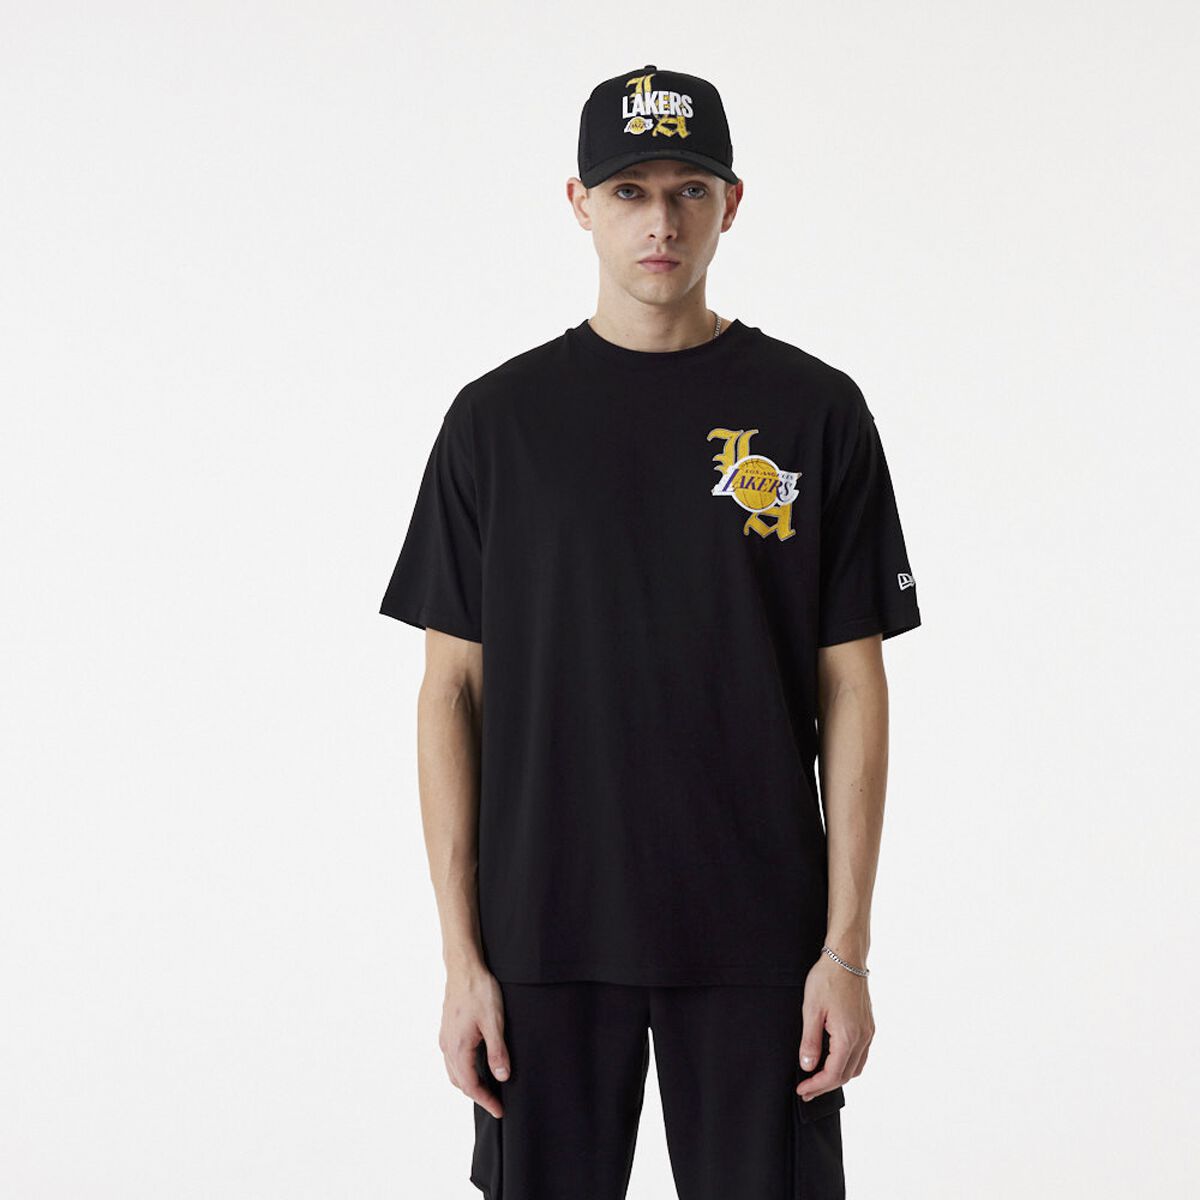 New Era - NBA T-Shirt - Los Angeles Lakers - S bis M - für Männer - Größe S - schwarz